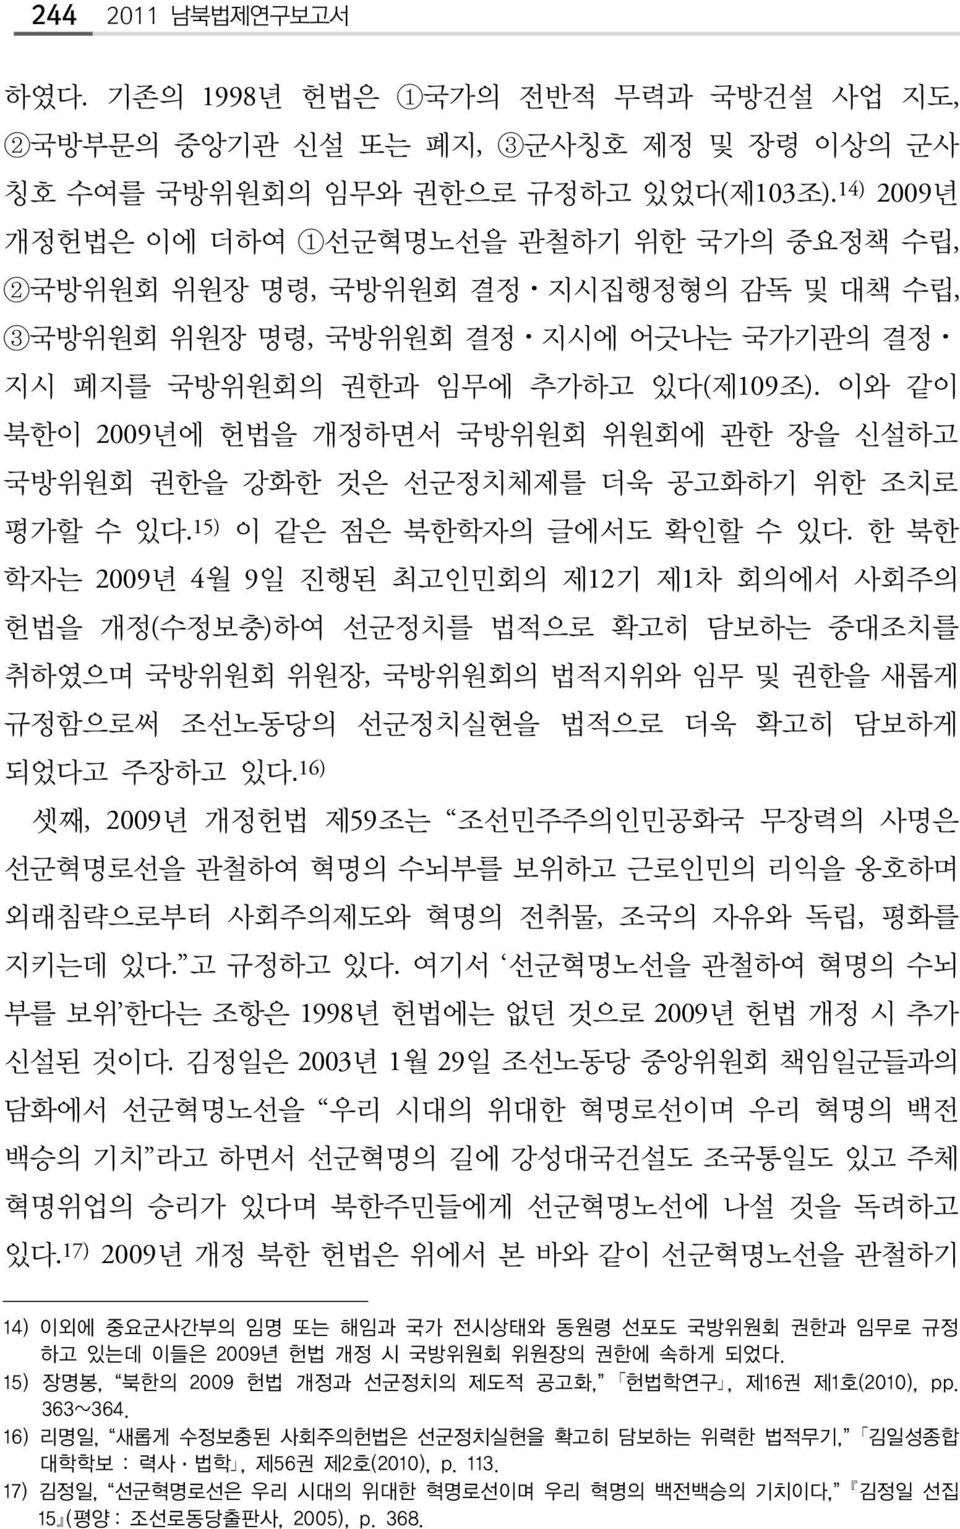 이와 같이 북한이 2009년에 헌법을 개정하면서 국방위원회 위원회에 관한 장을 신설하고 국방위원회 권한을 강화한 것은 선군정치체제를 더욱 공고화하기 위한 조치로 평가할 수 있다. 15) 이 같은 점은 북한학자의 글에서도 확인할 수 있다.